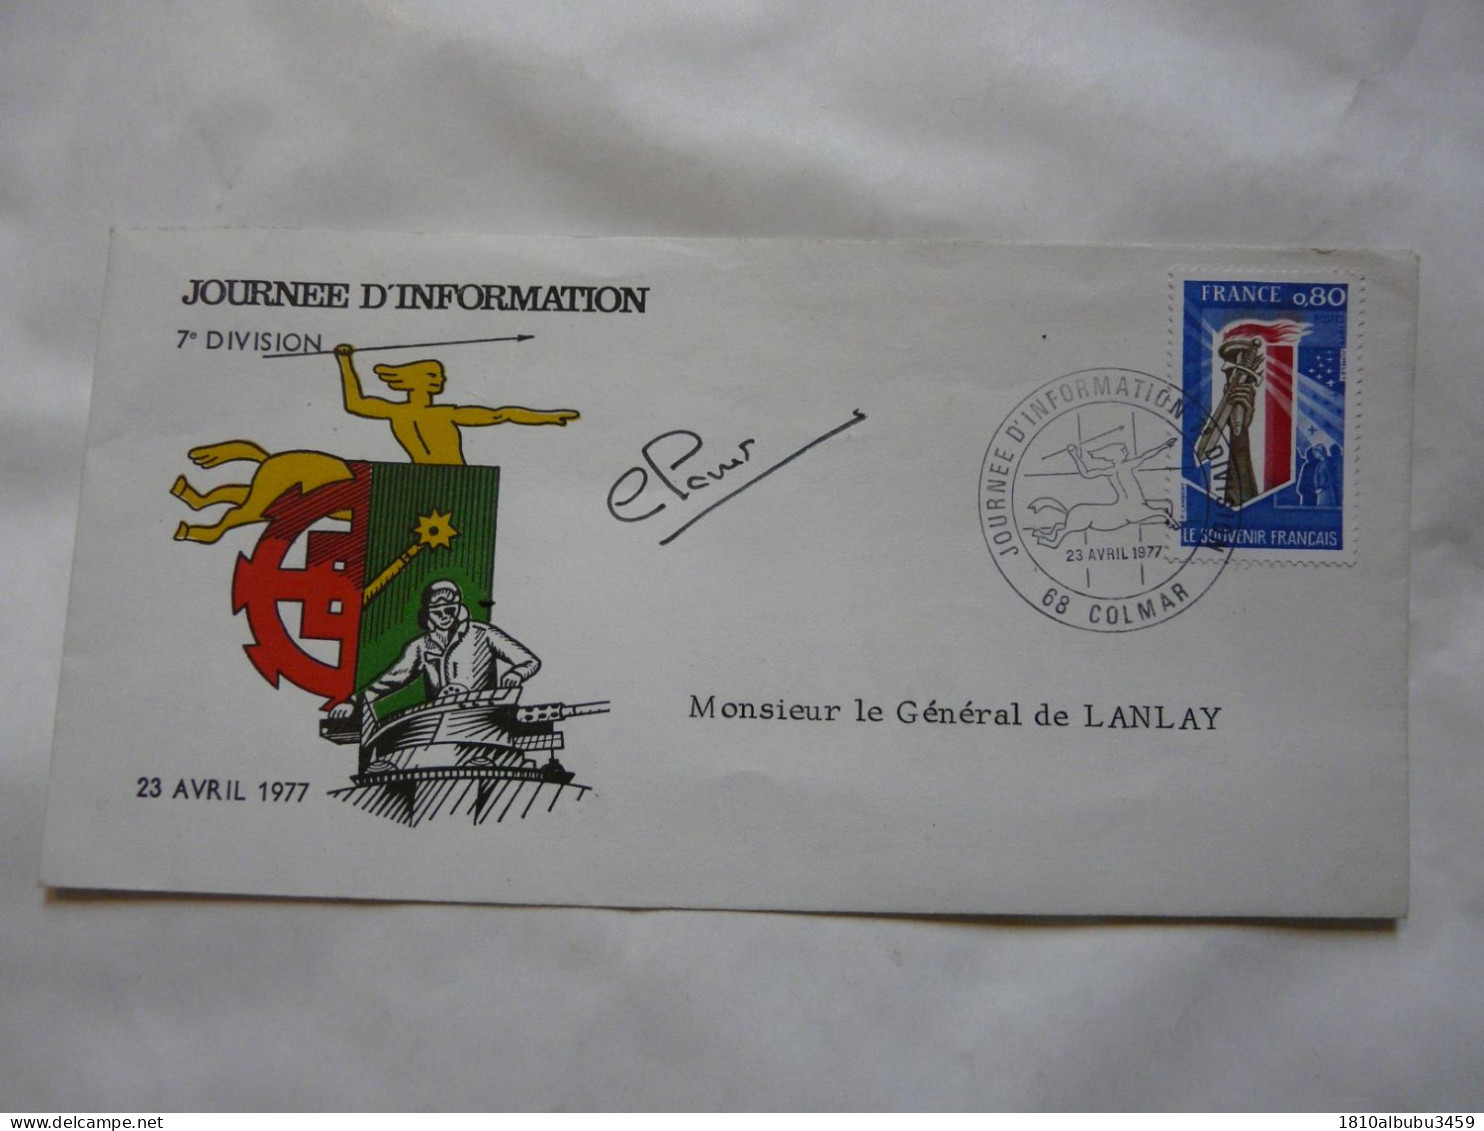 JOURNEE D'INFORMATION 7e DIVISION - Monsieur Le Général De LANLAY 1977 - Tag Der Briefmarke